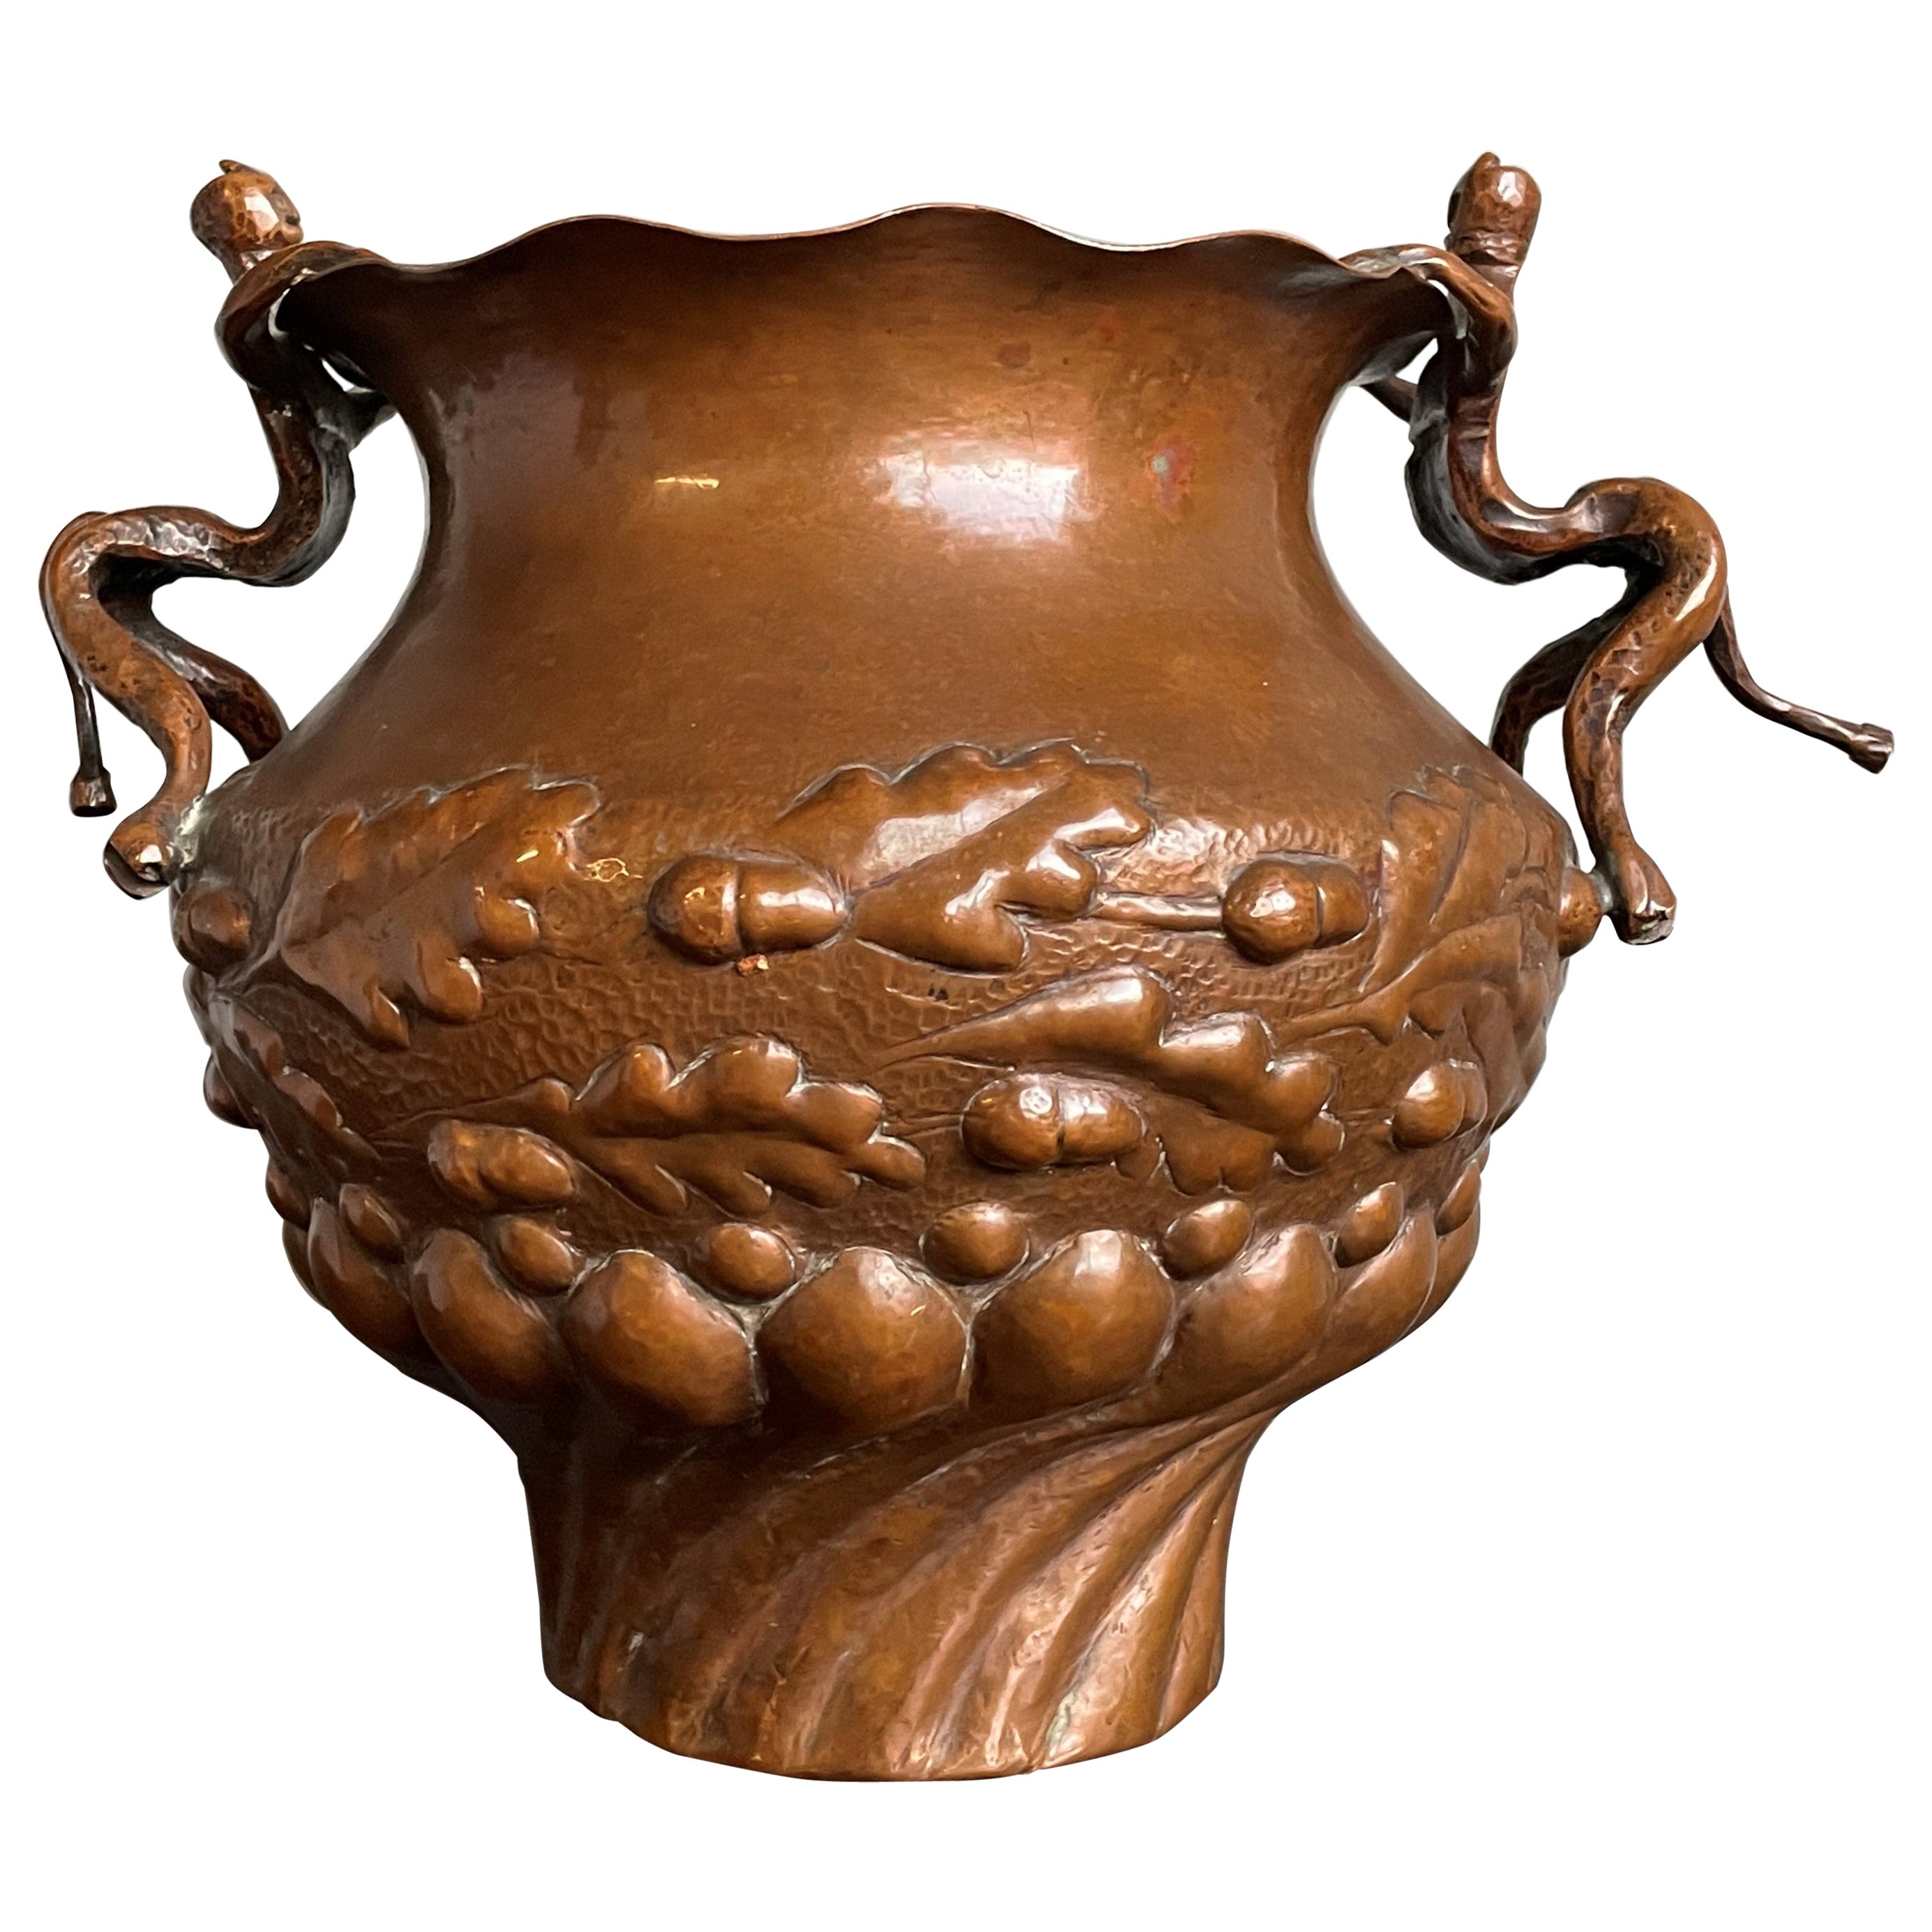 Jardinière/vase unique du milieu des années 1800 en cuivre embossé avec des sculptures de satyres en guise de poignées